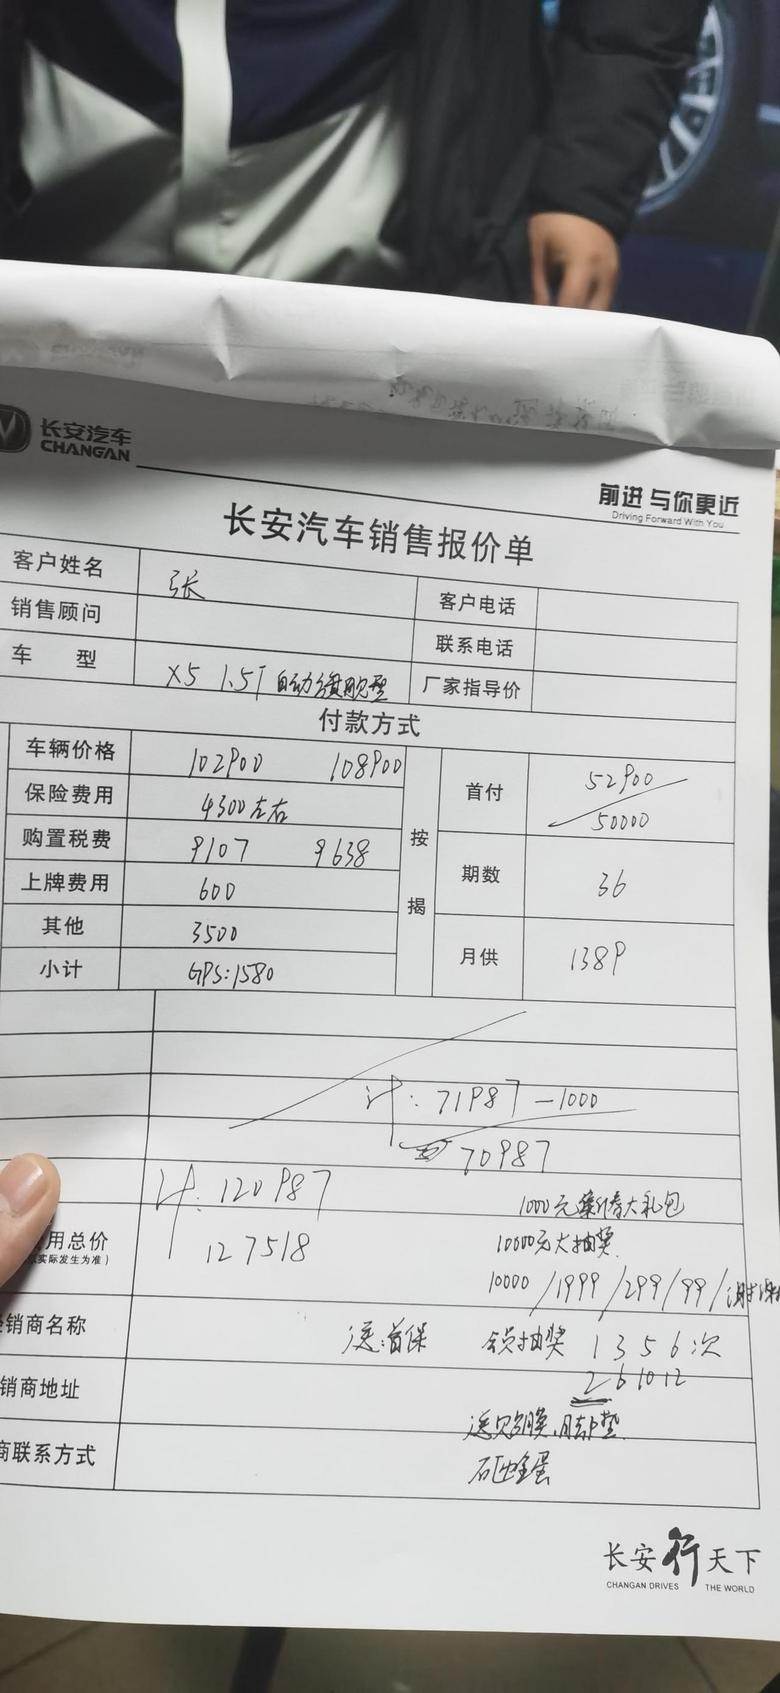 长安欧尚x5 昨天订车顶配置加6千选装包122500贷款5万,首付6.7万